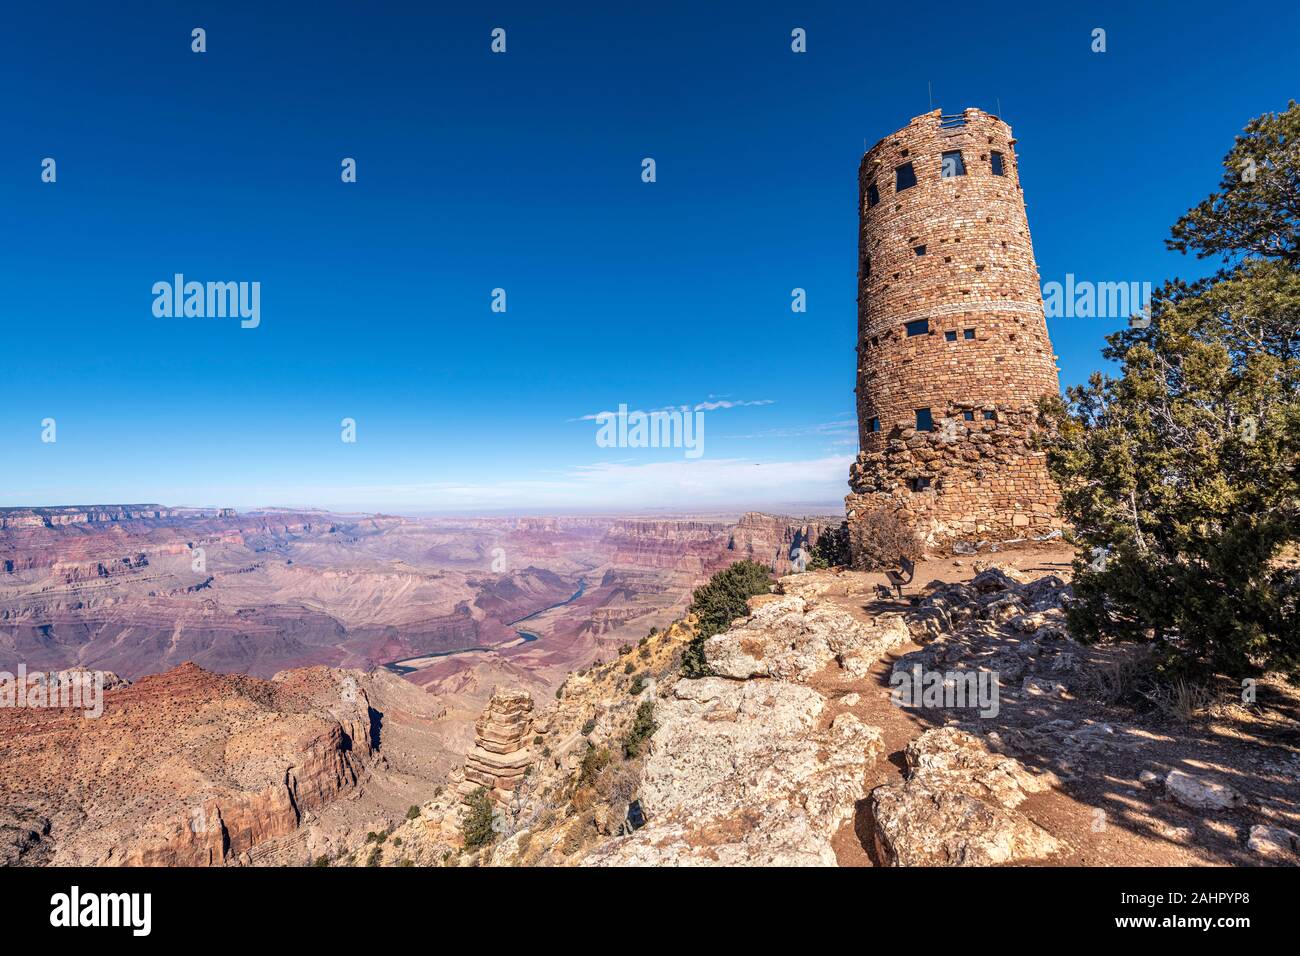 Una vista panoramica delle zone montane del Grand Canyon deserto vista torre di avvistamento incorniciato contro un cielo blu. Foto Stock